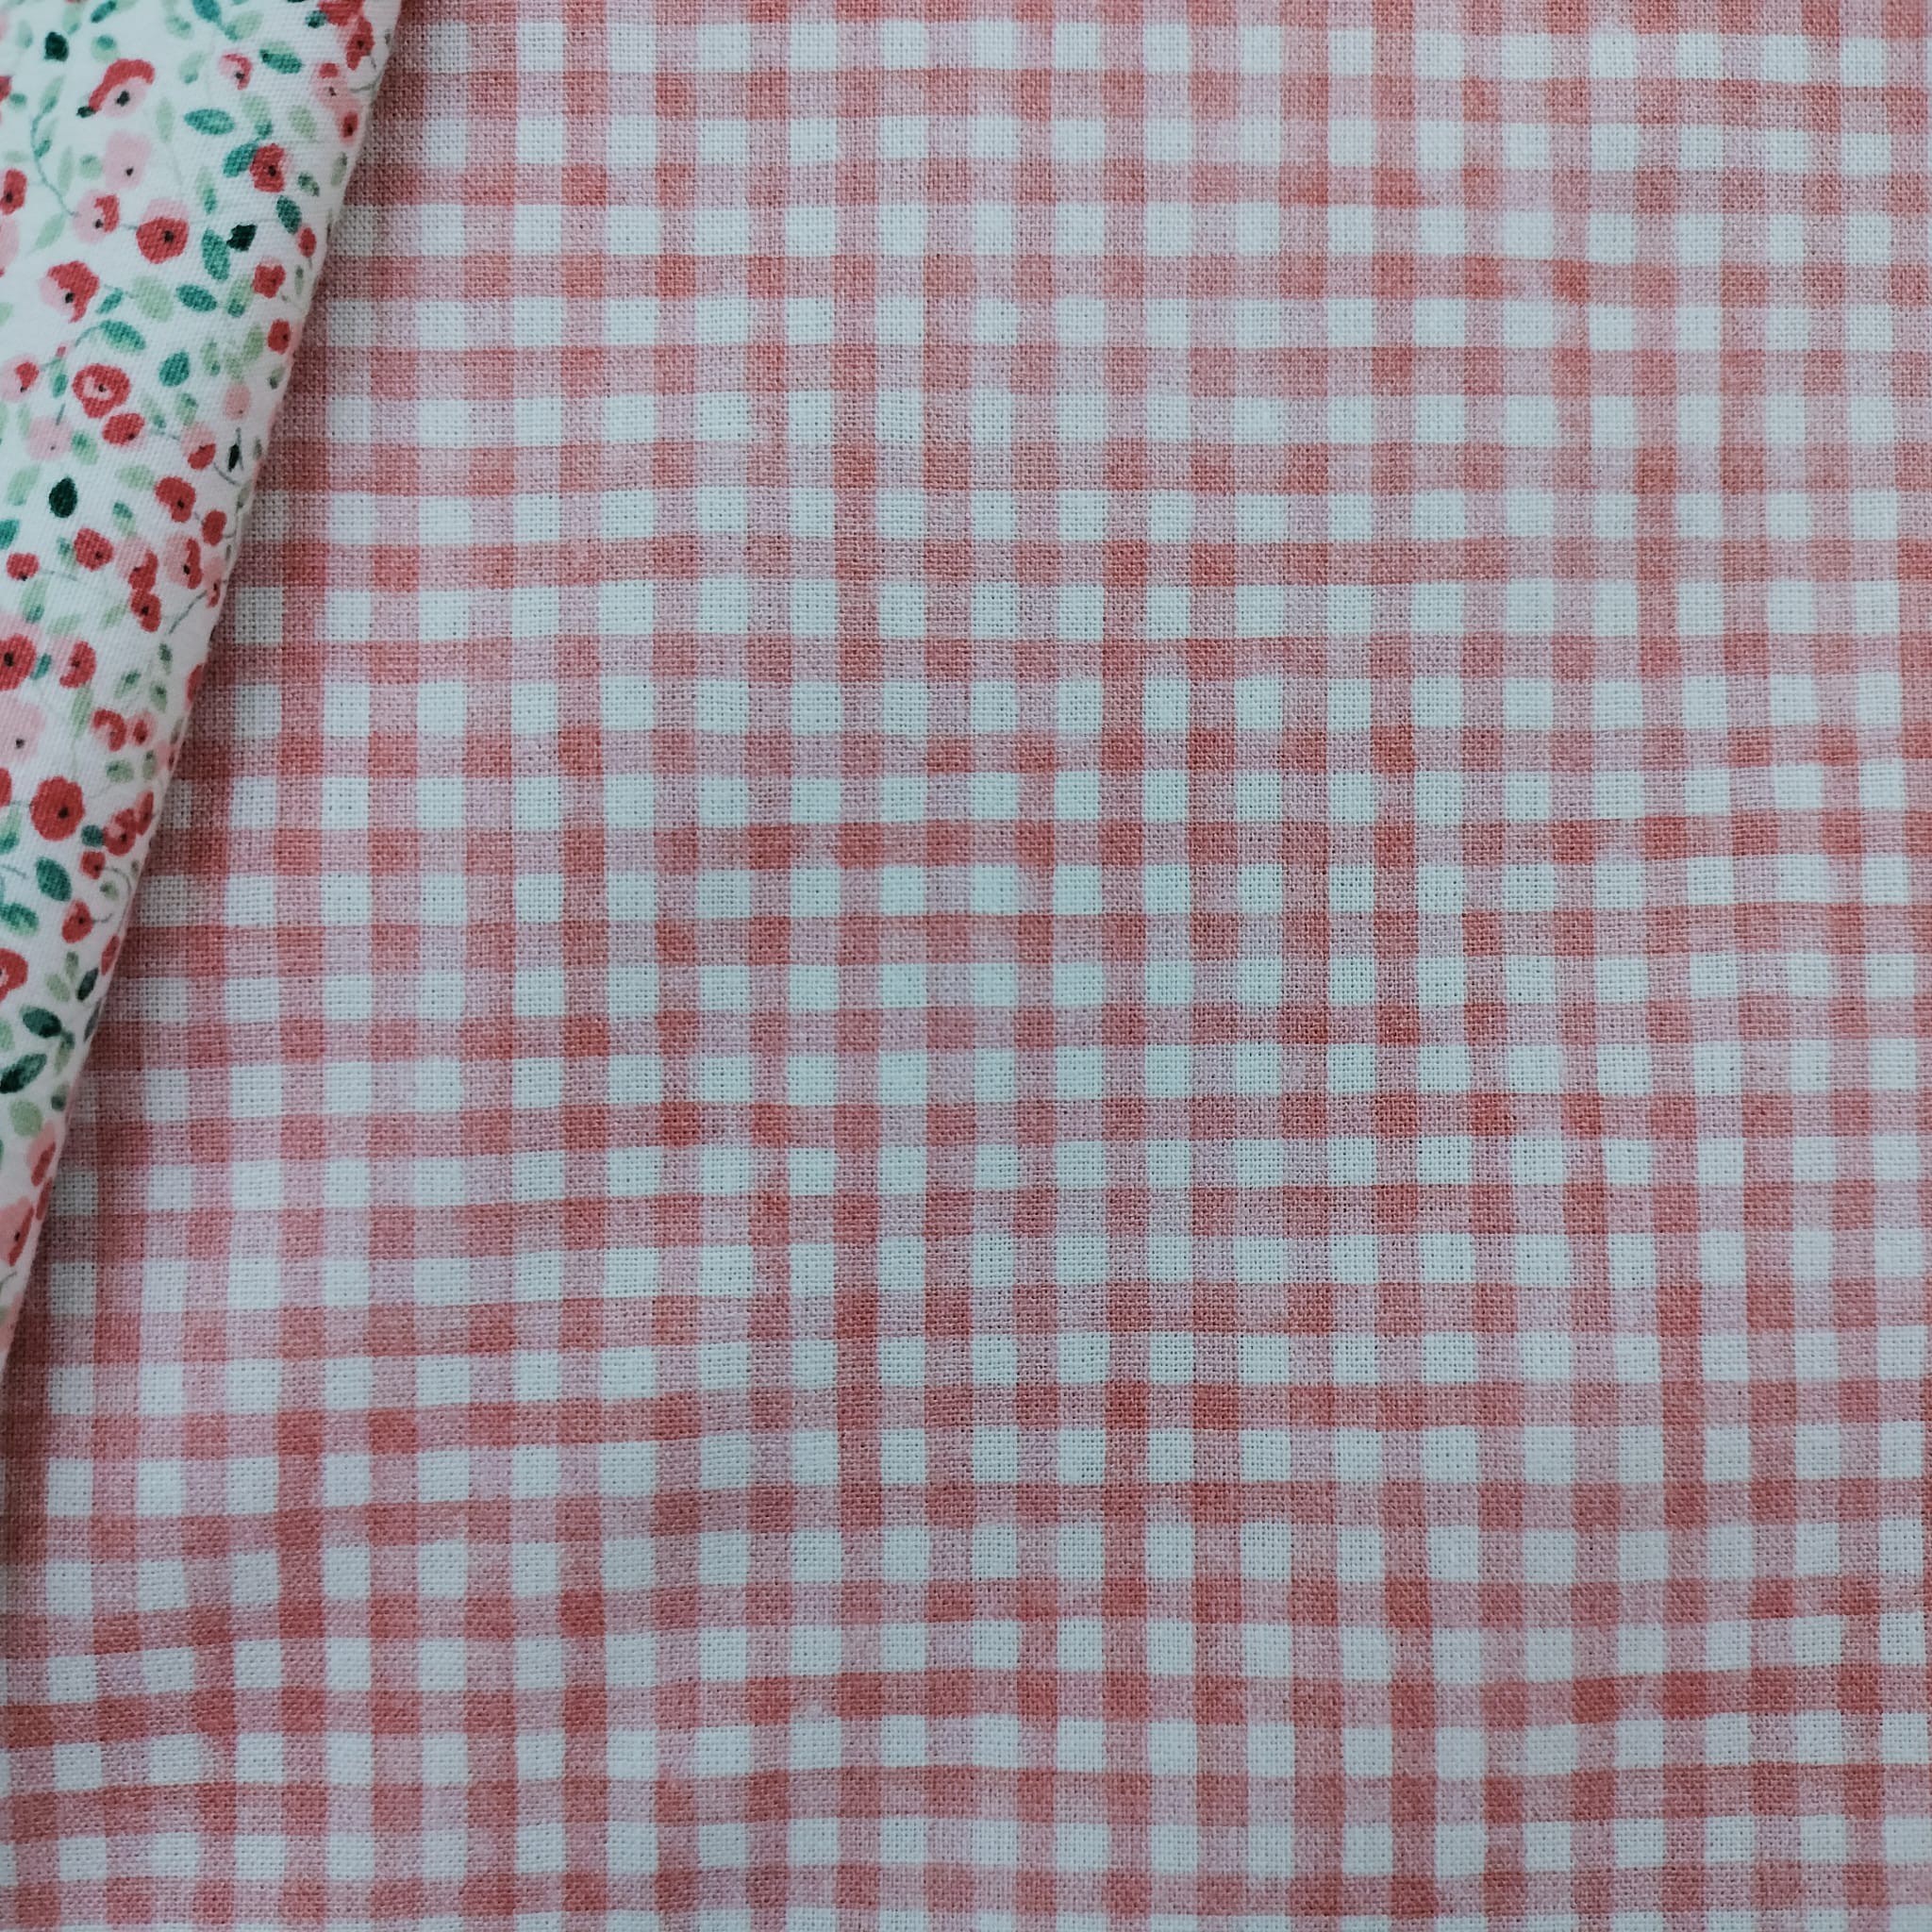 Tela cuadros vichy rosa bebé 10mm algodón - Trapo's - Telas y tejidos